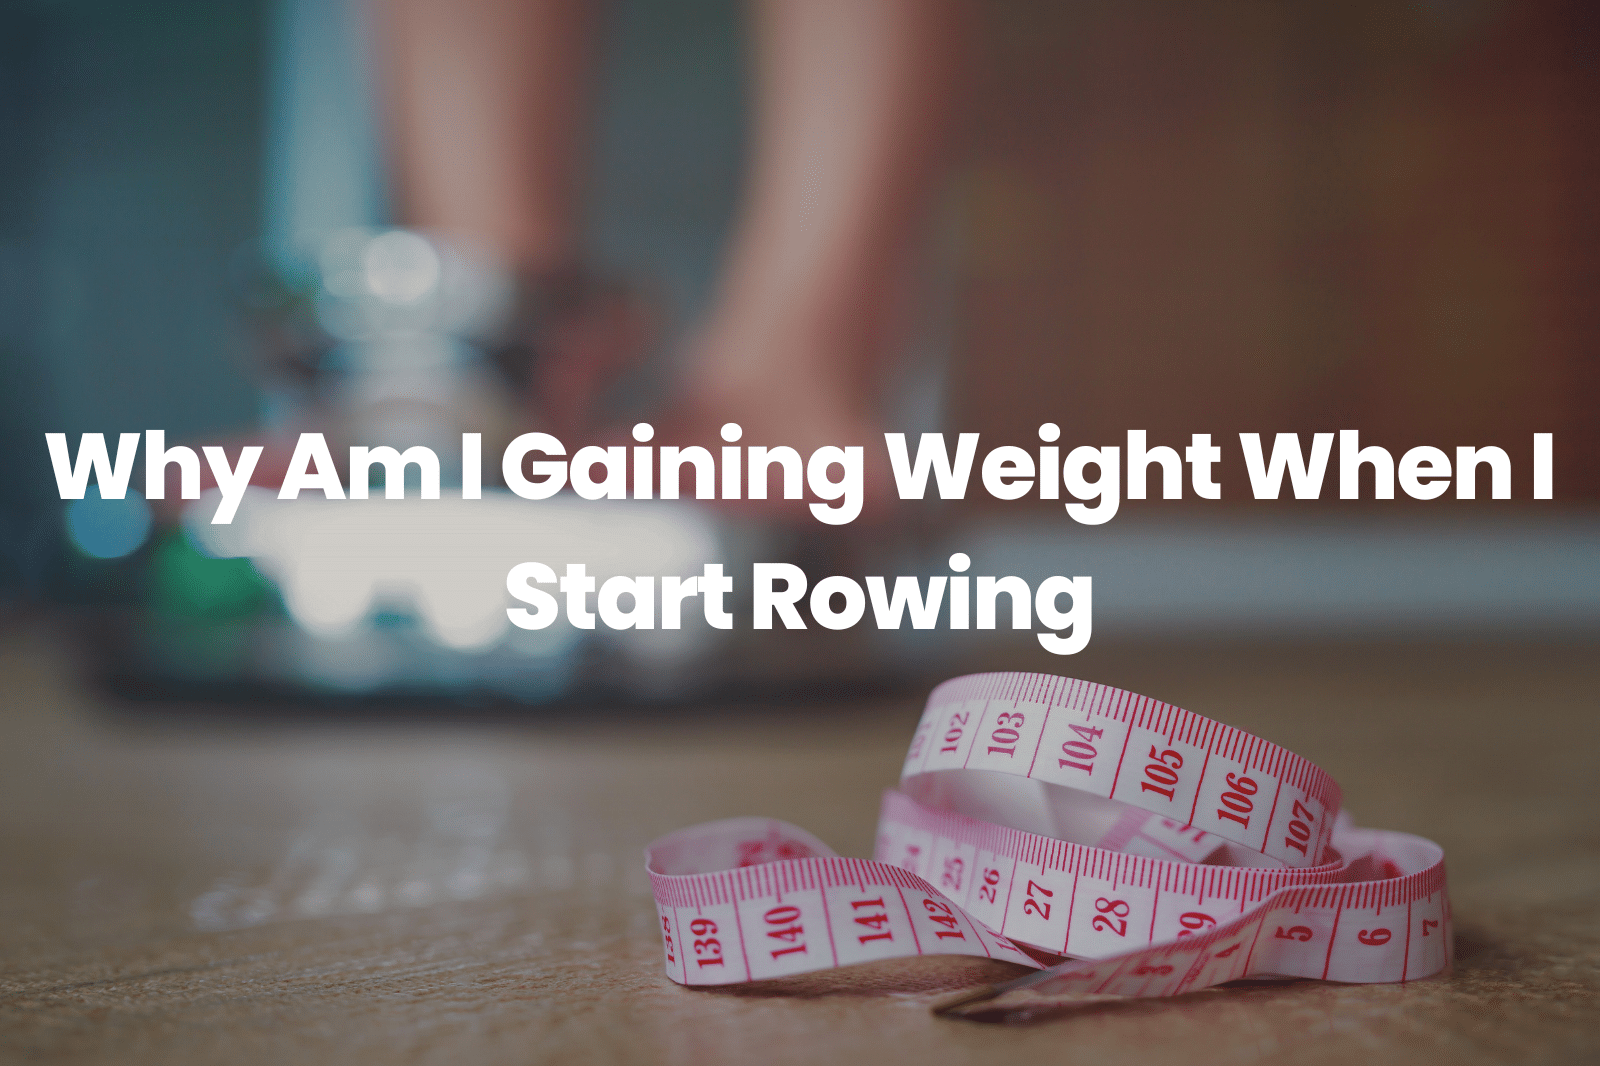 Start Rowing